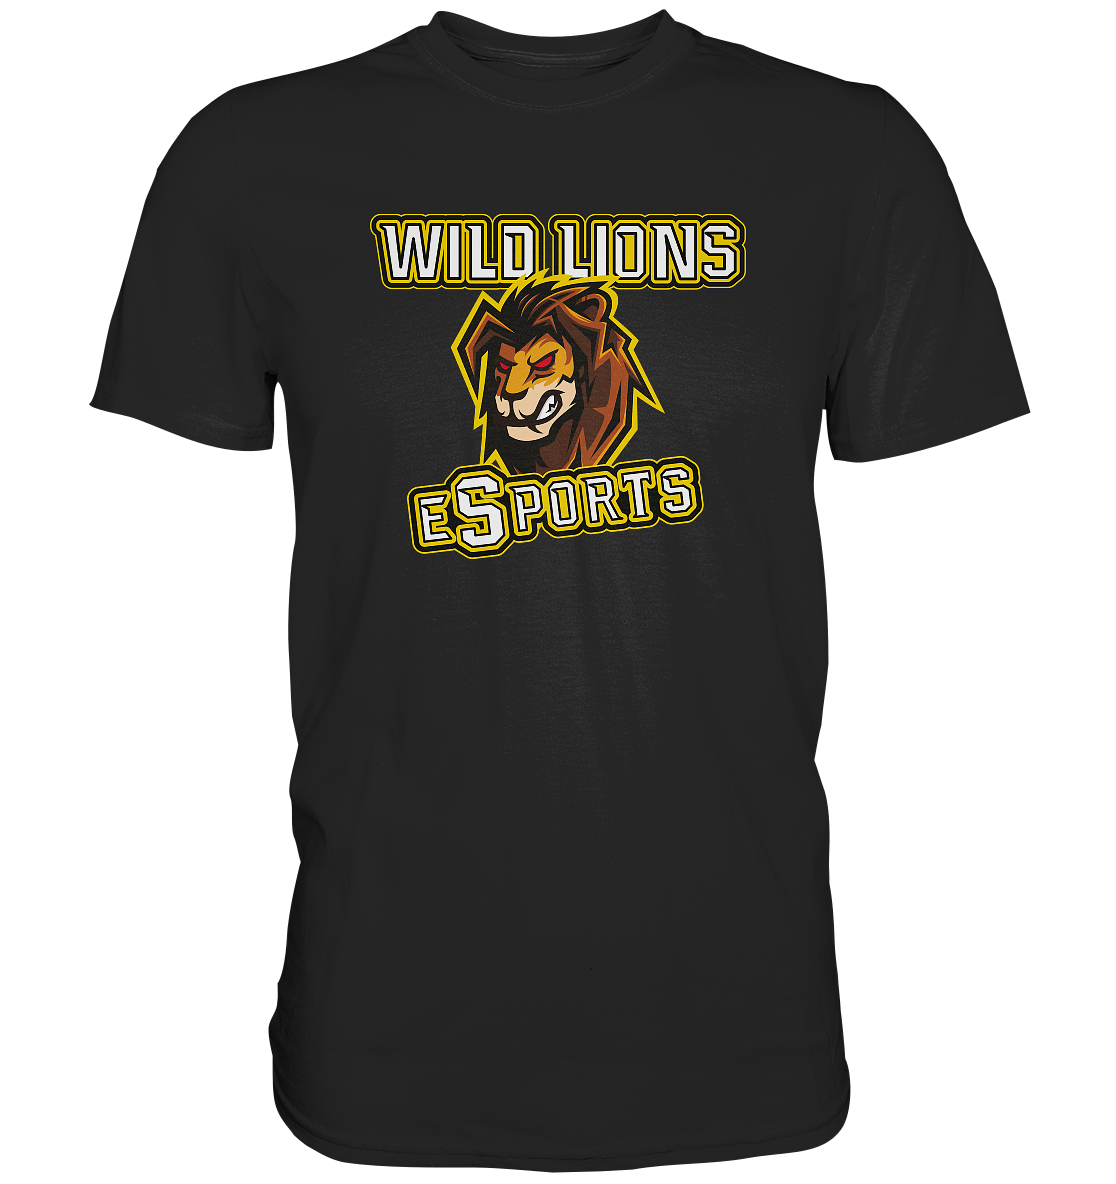 WILD LIONS ESPORTS - Basic Shirt